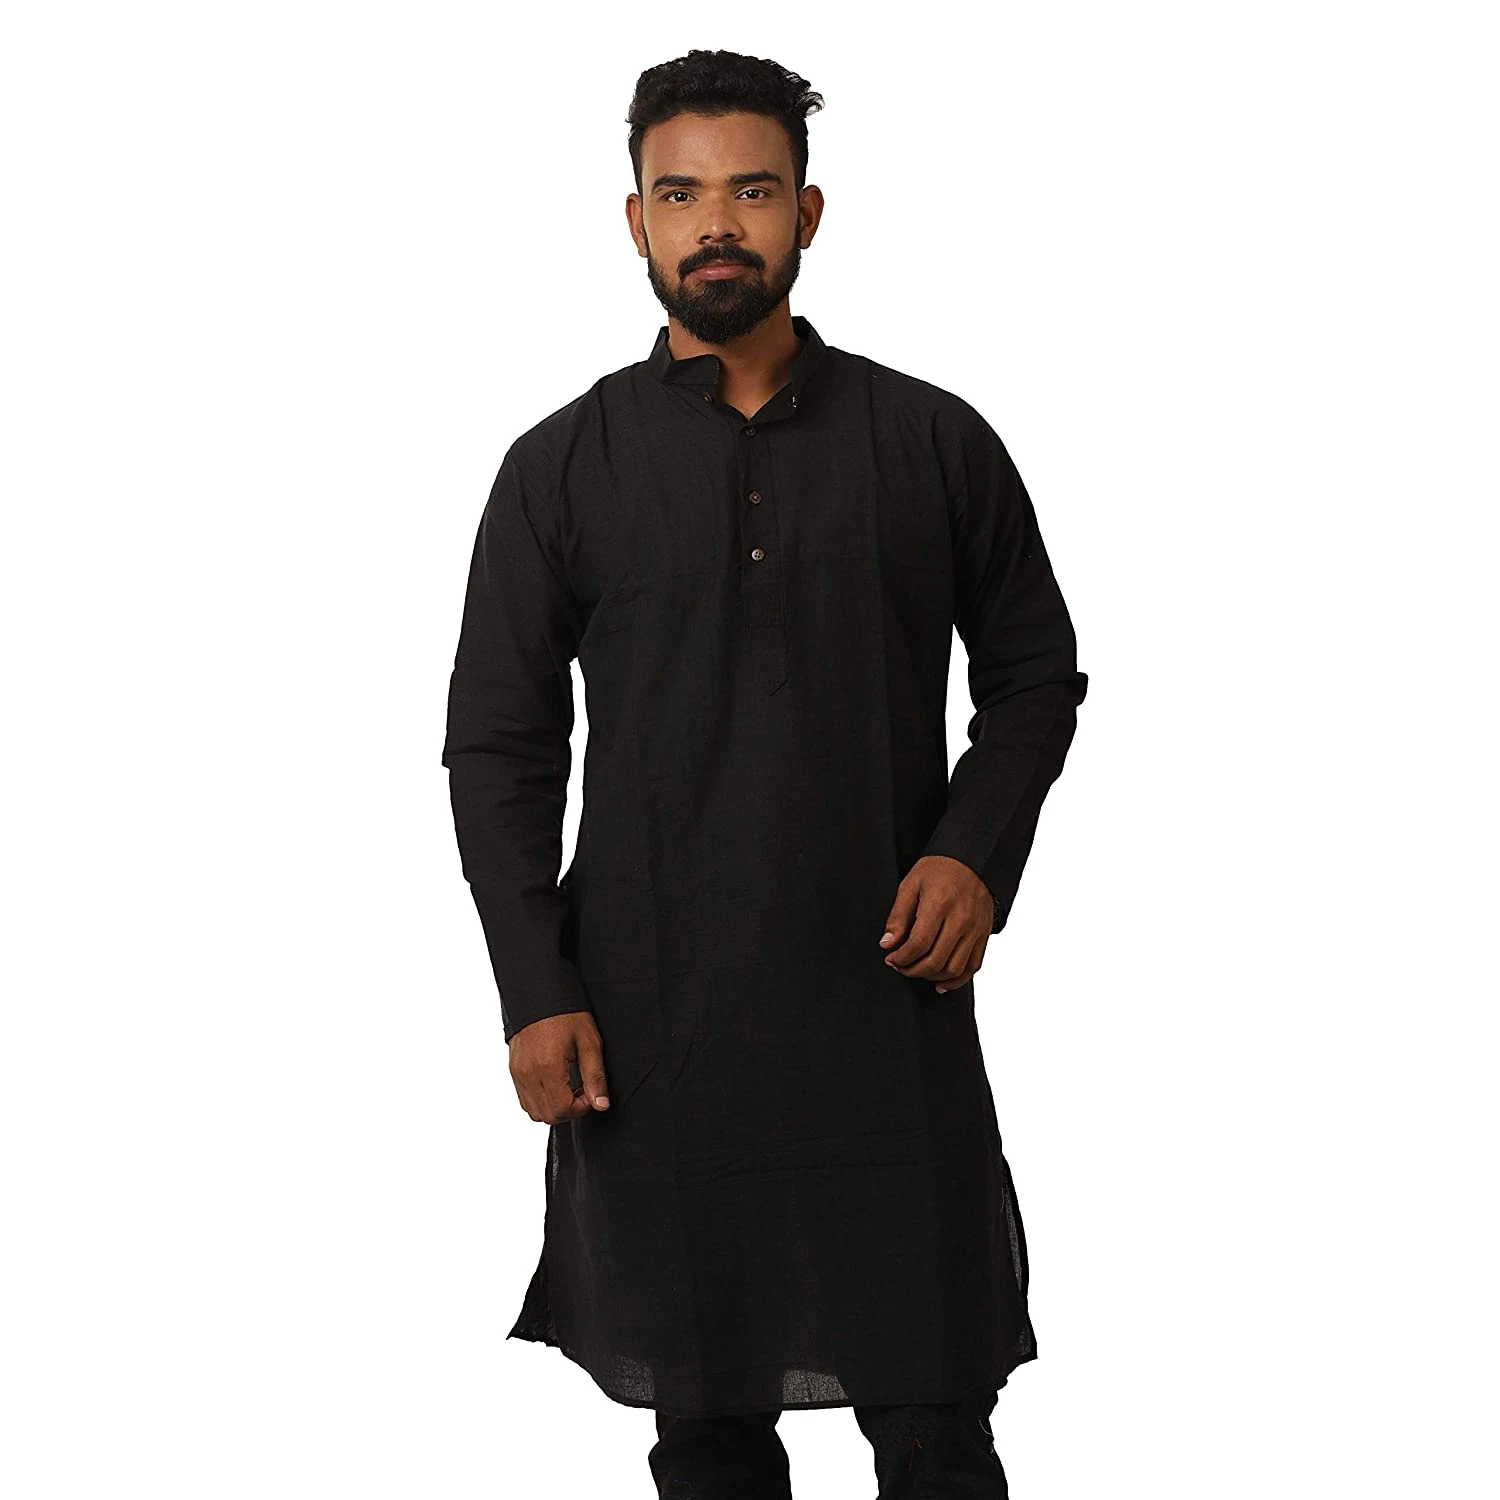 কালো পাঞ্জাবি - black panjabi design - কালারফুল পাঞ্জাবি ডিজাইন - Colorful Punjabi Designs - NeotericIT.com